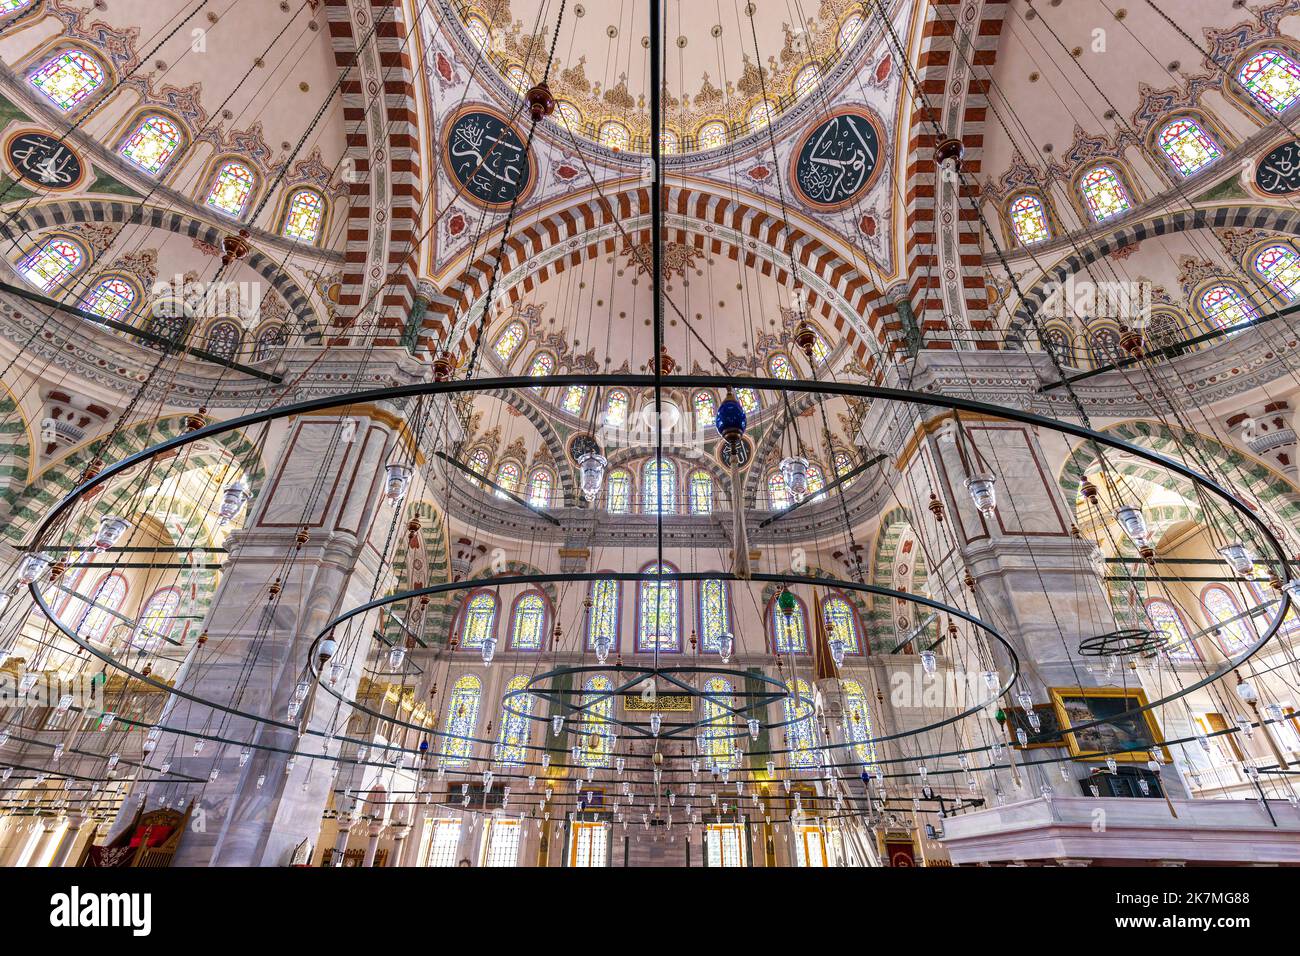 Mosquée de Fatih à istanbul. Vue intérieure. Turquie. Banque D'Images